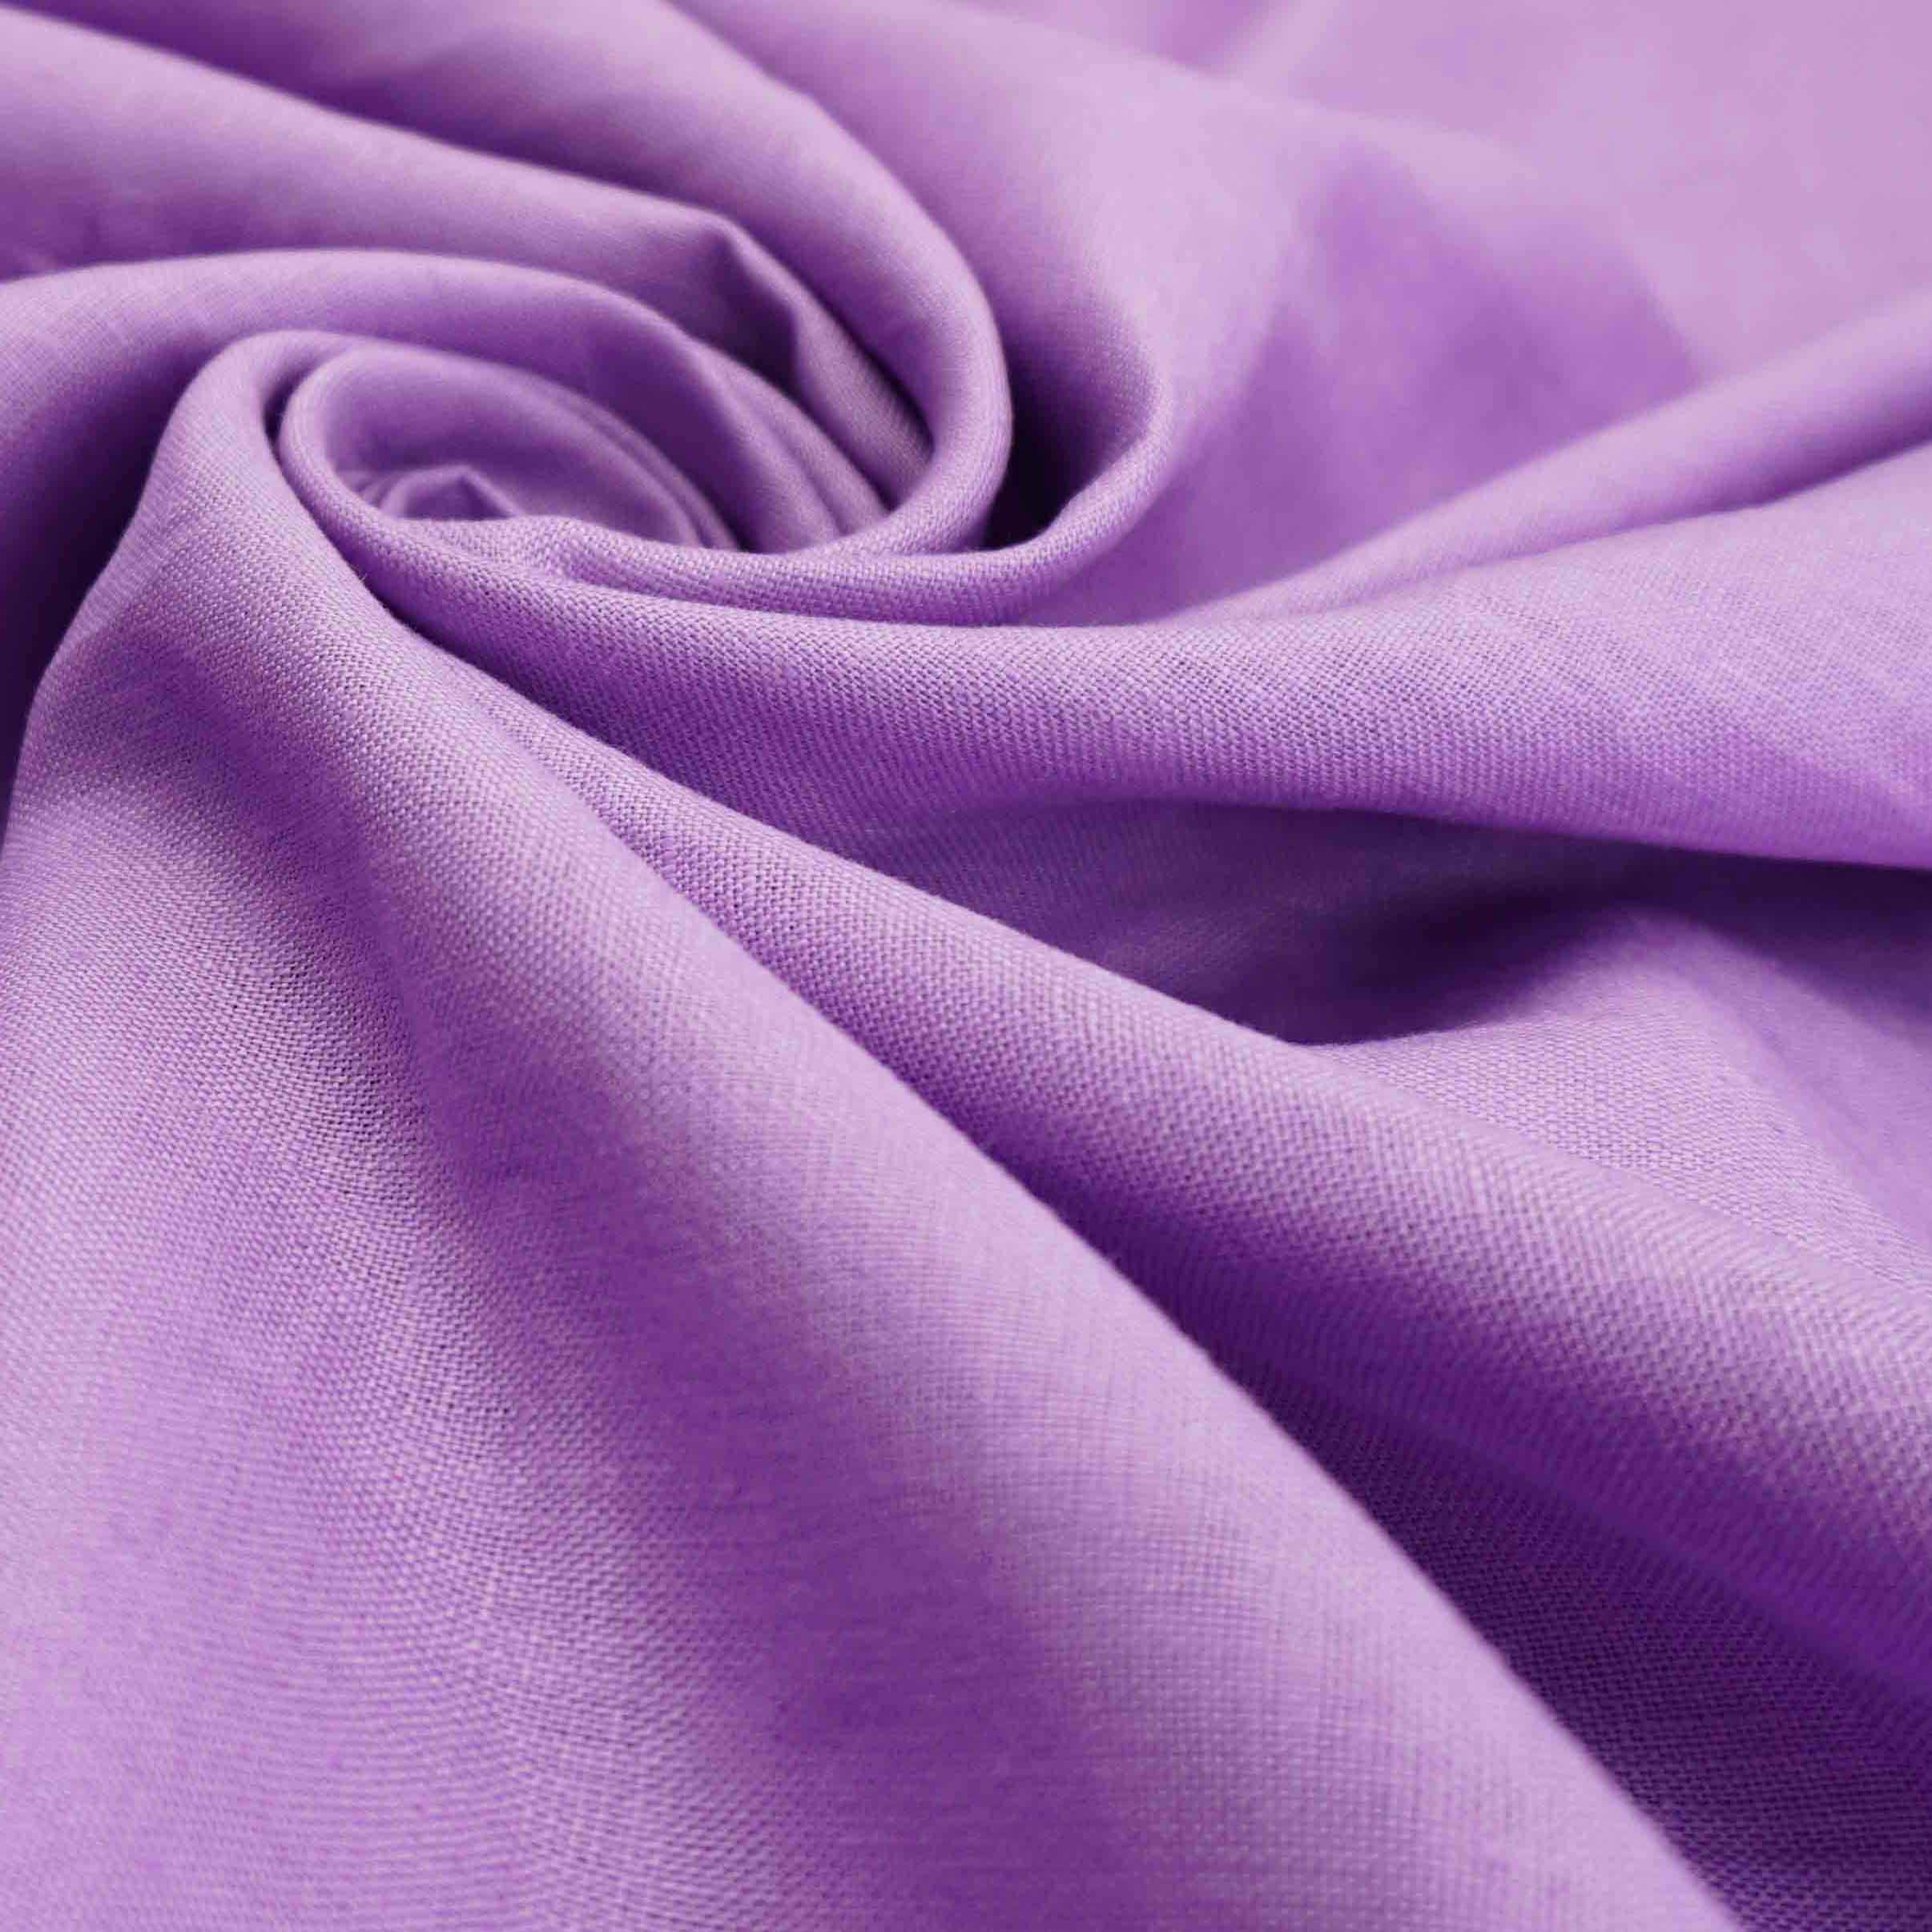 Tecido linho puro lilás